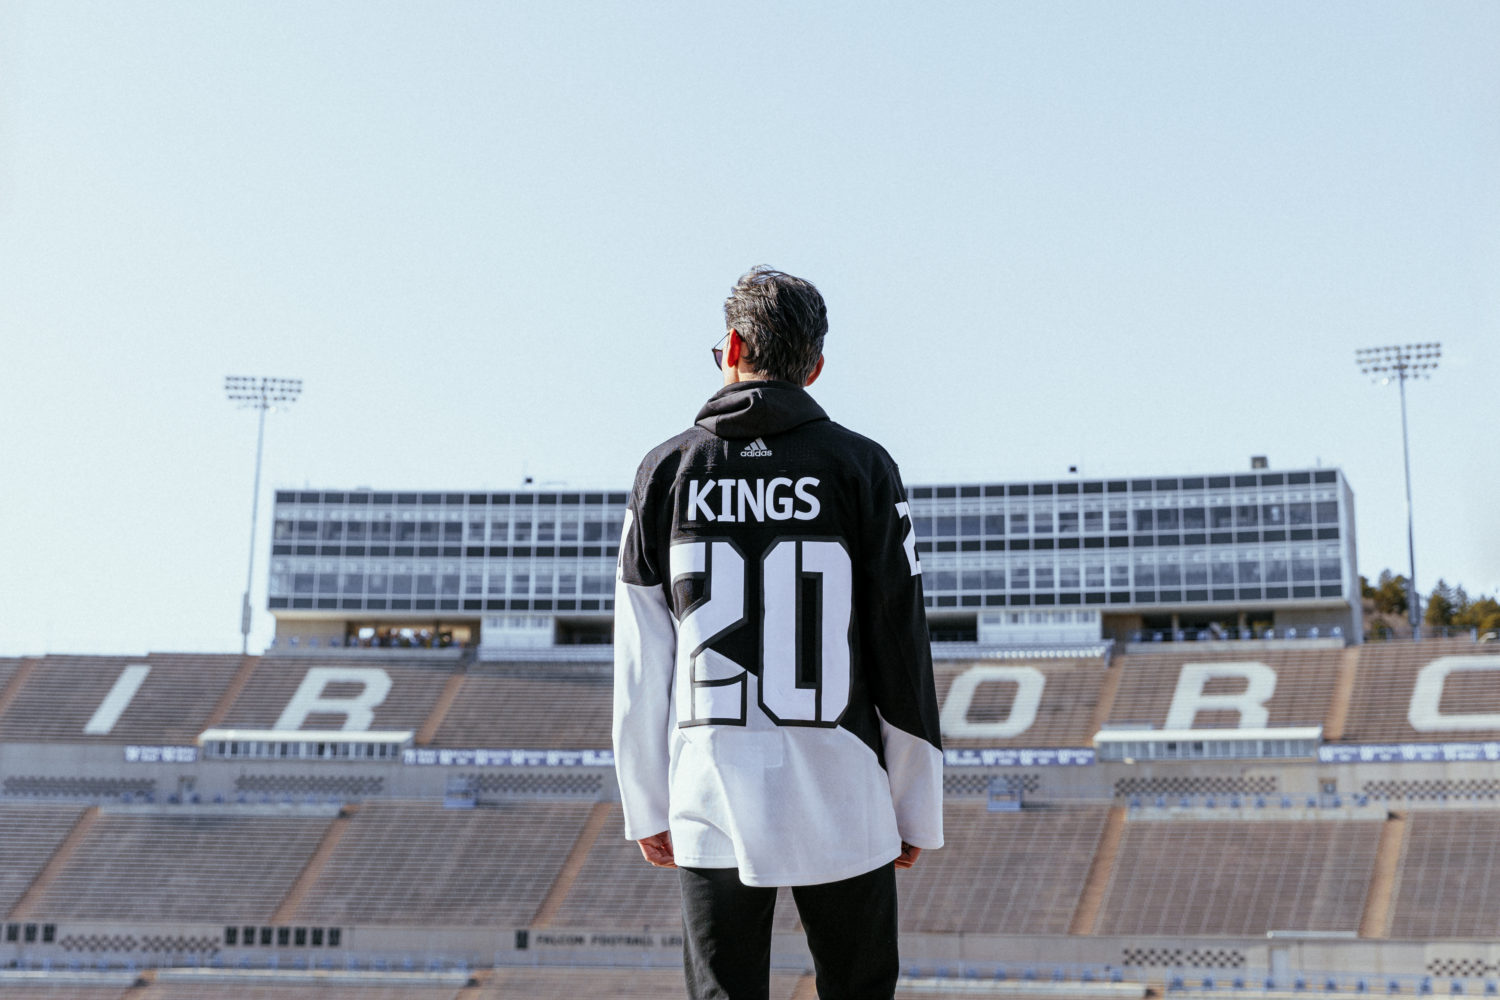 la kings jersey 2020